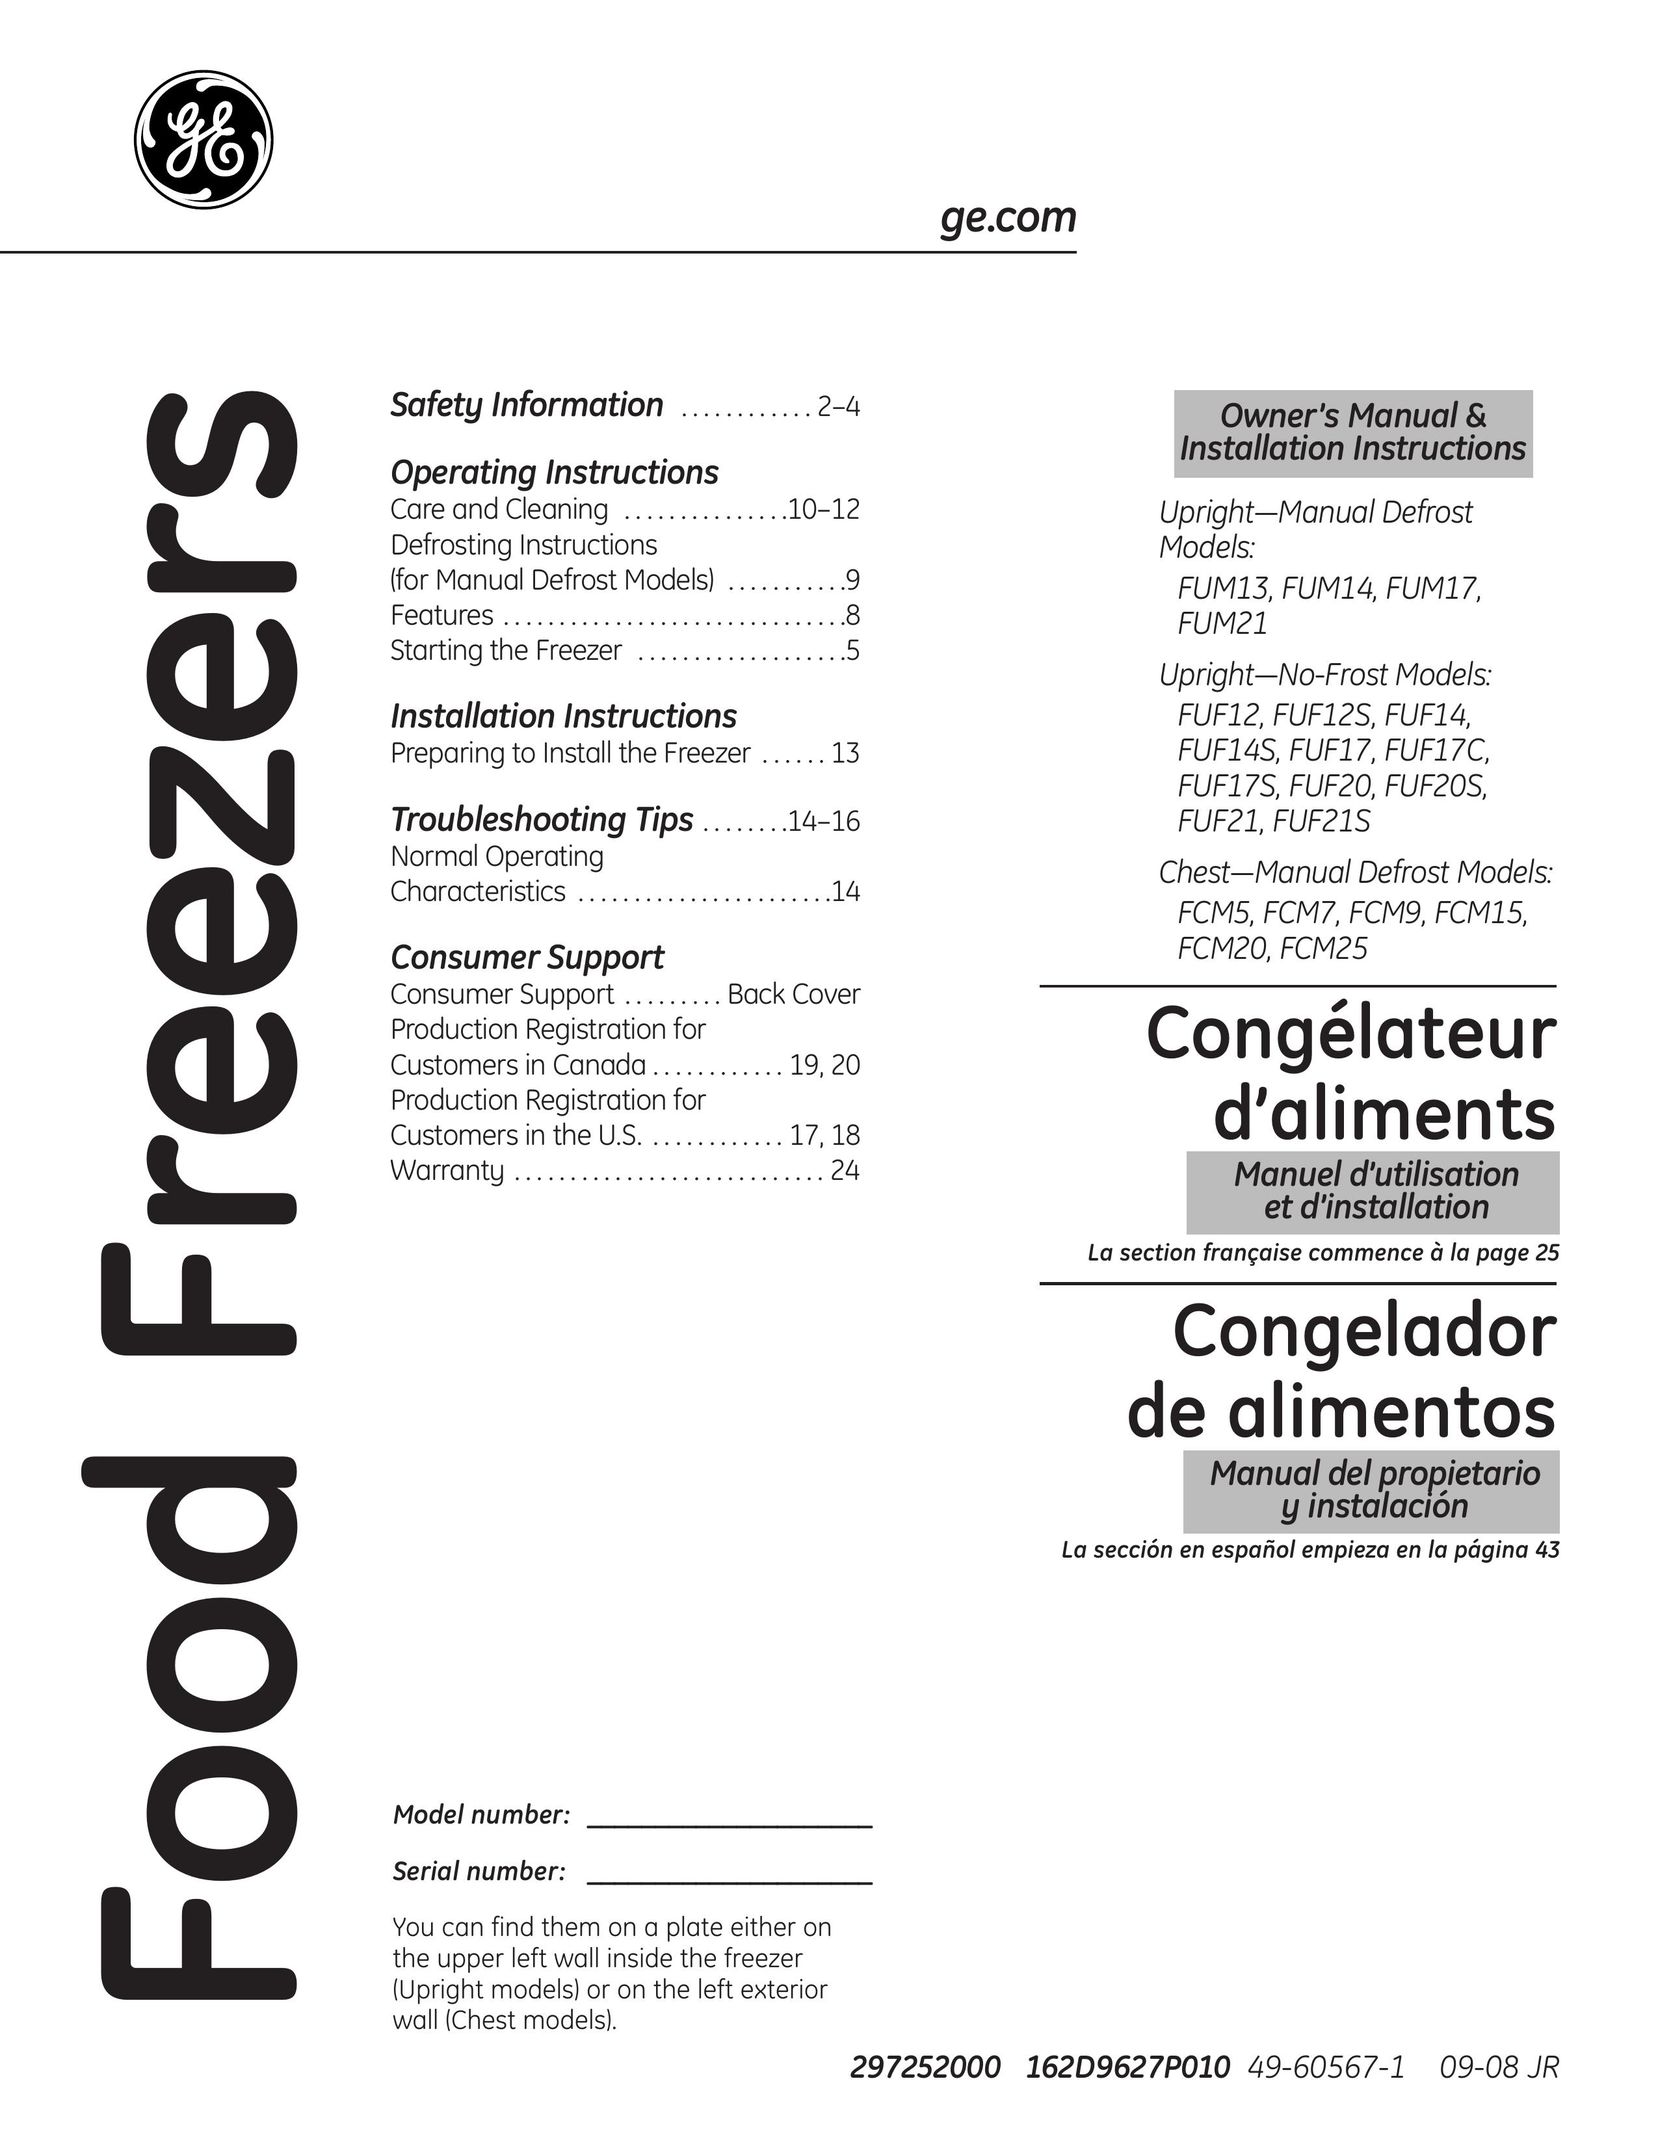 GE FUF12 Freezer User Manual